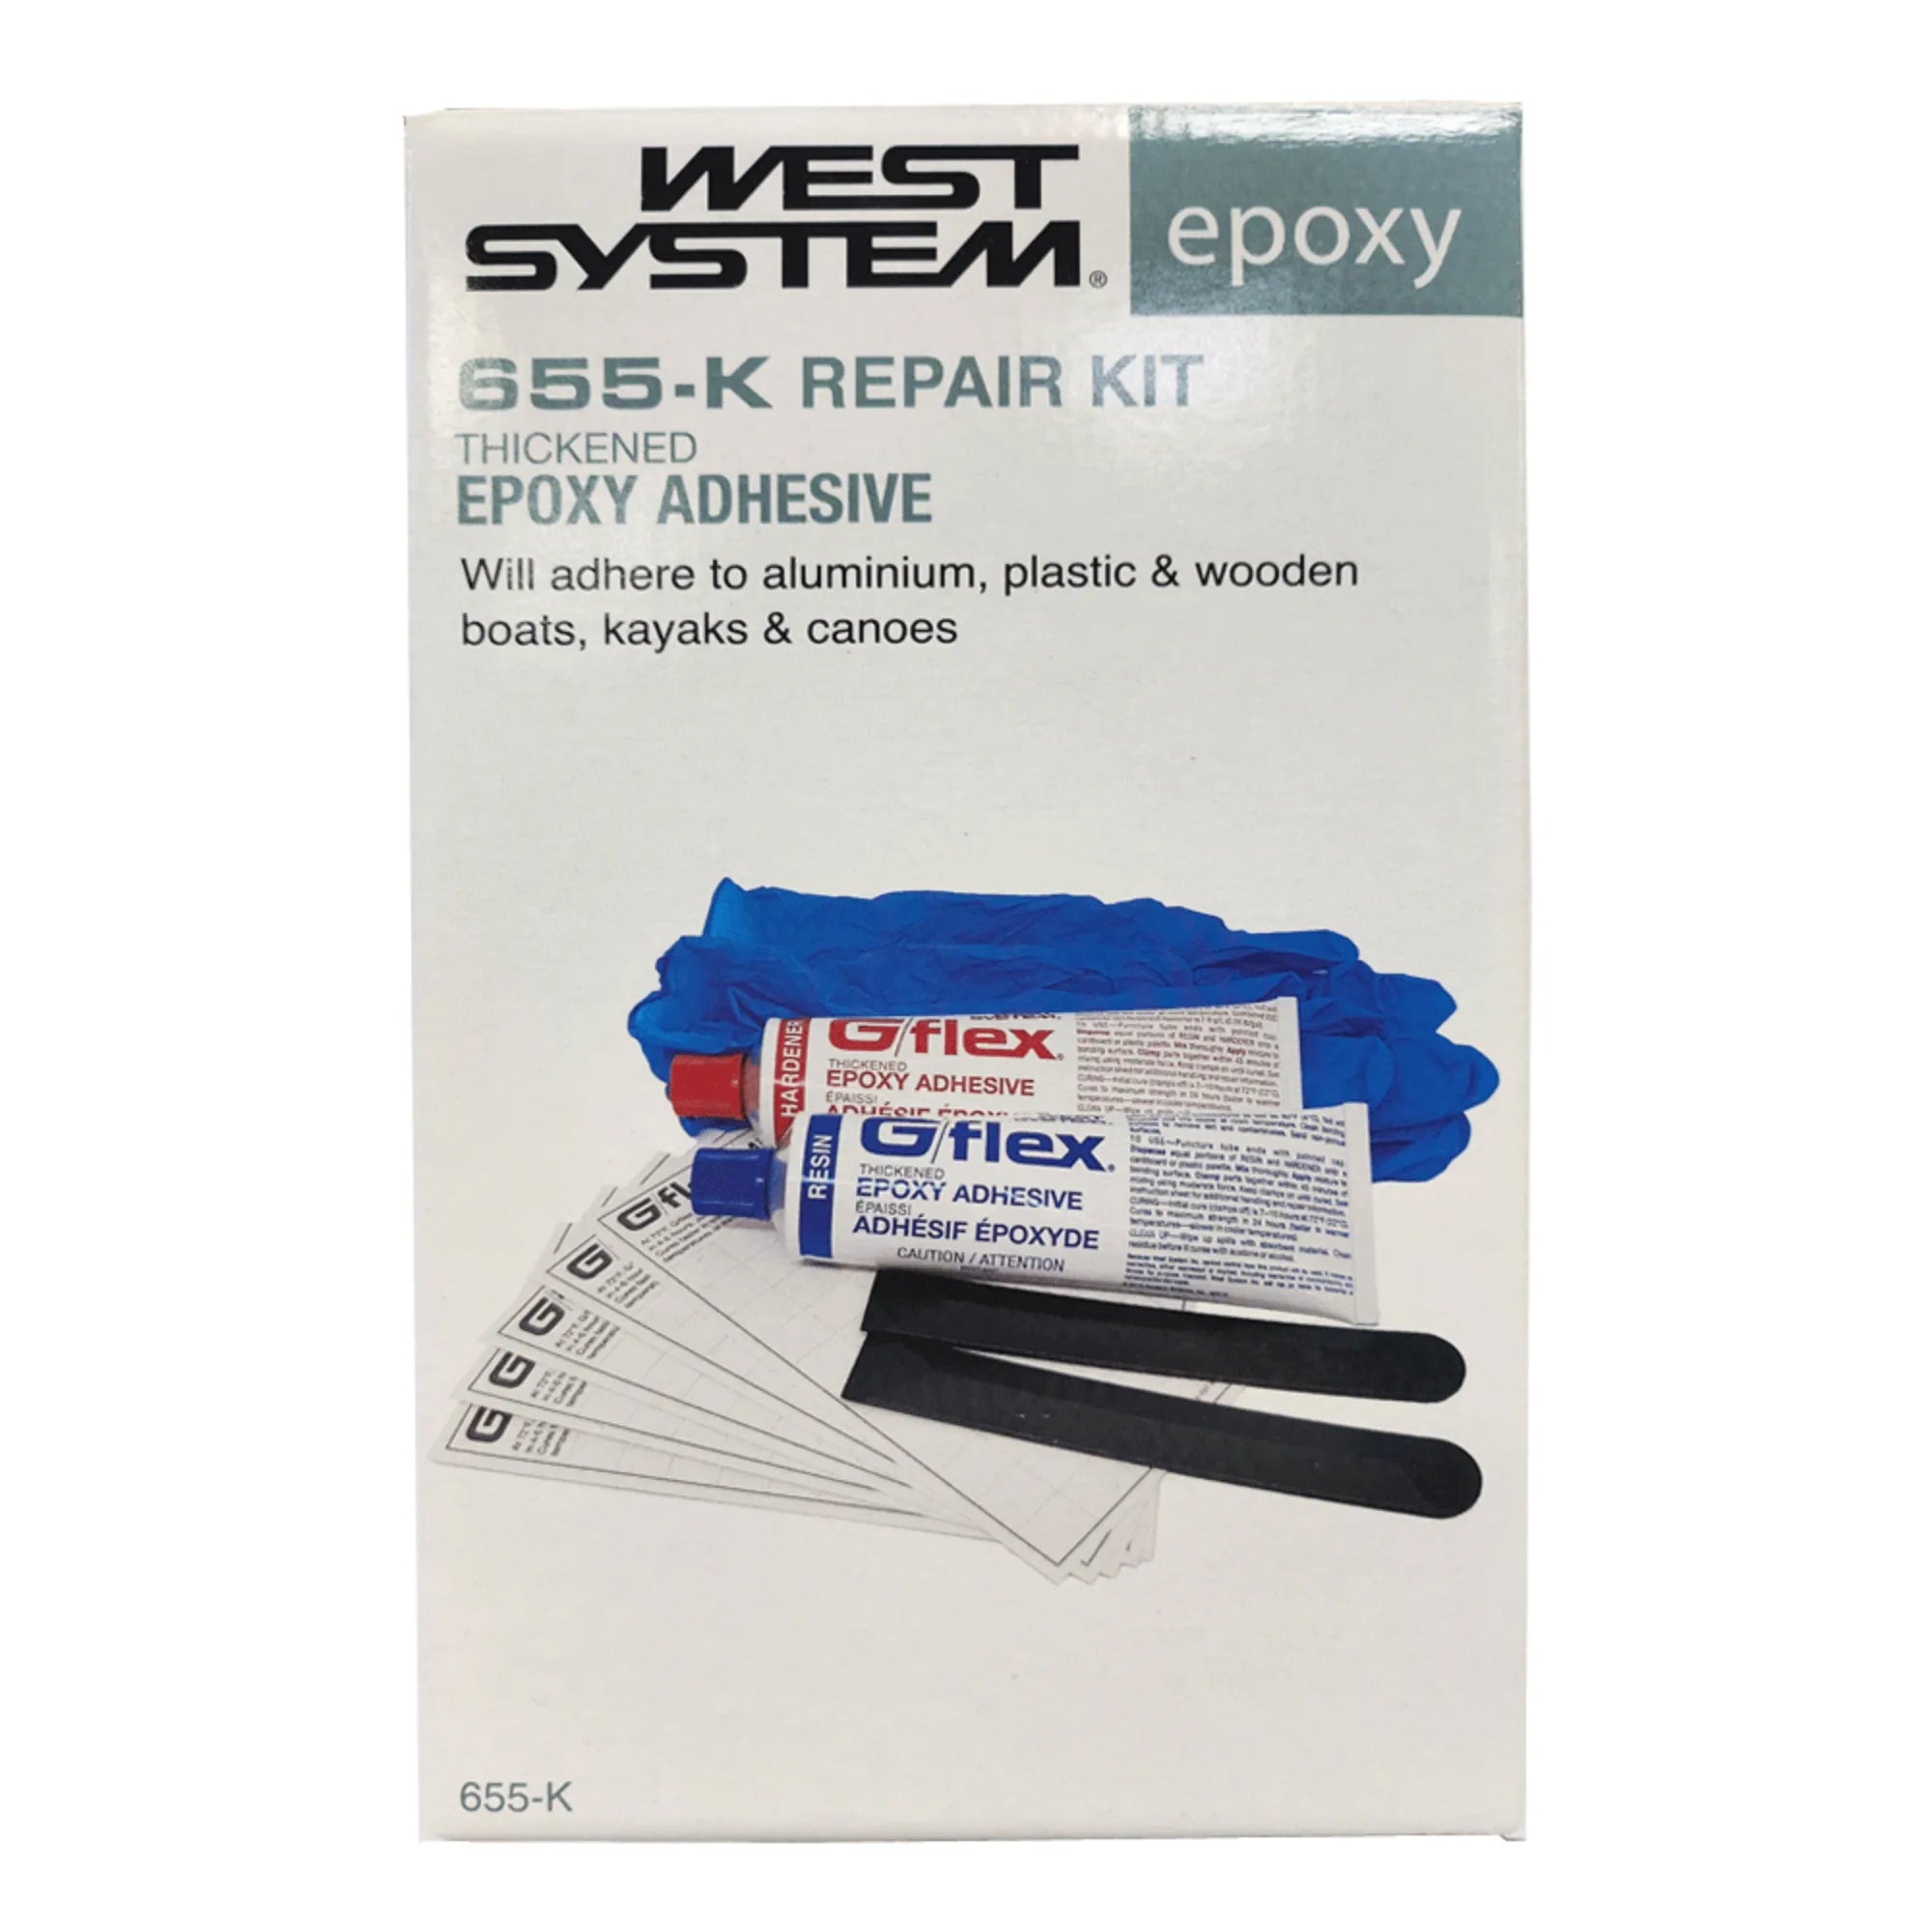 G Flex 655 Repair Kit